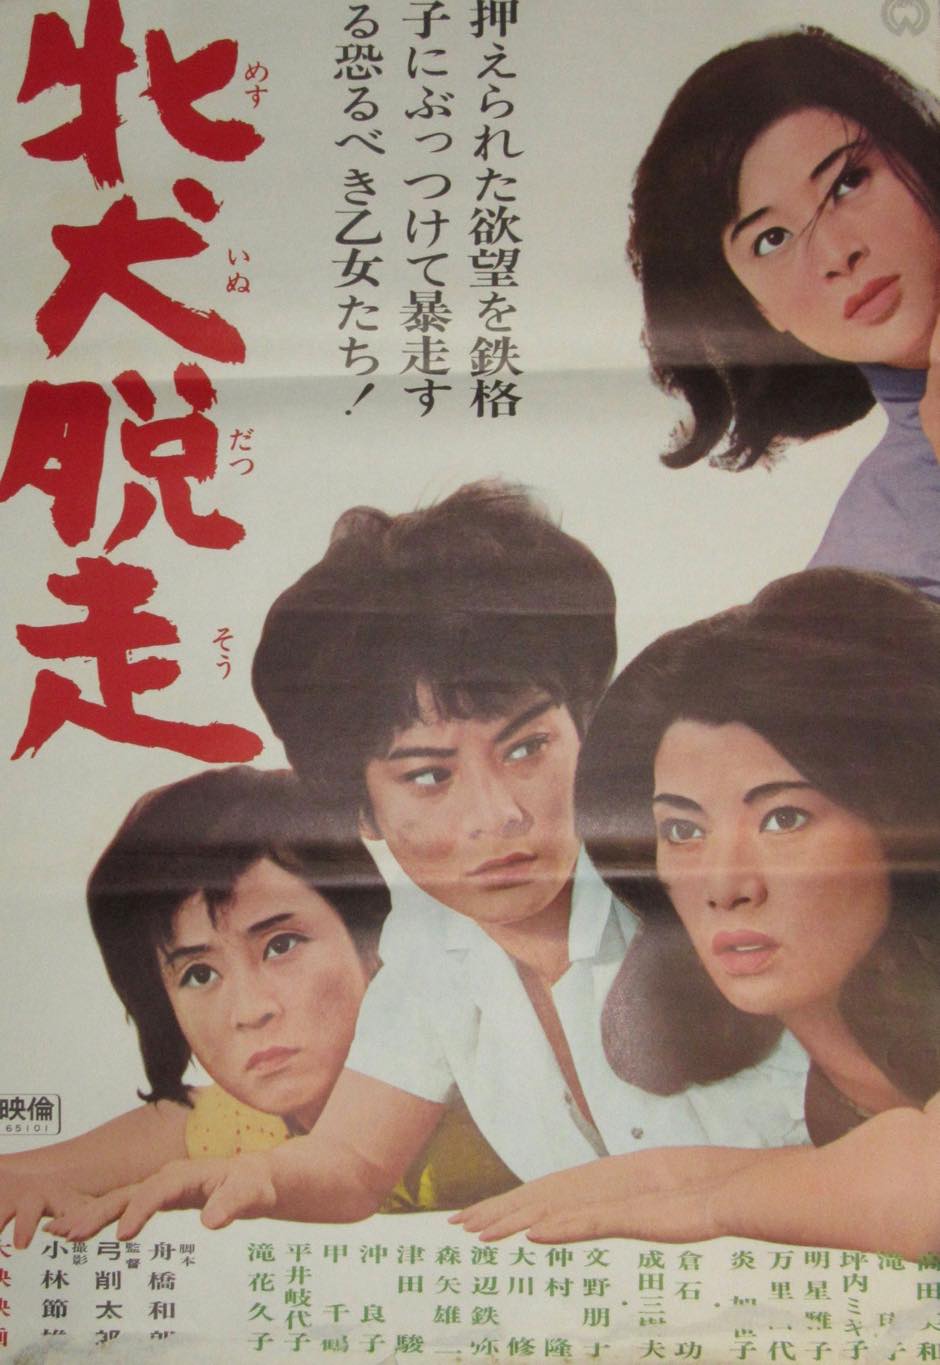 映画ポスター 牝犬脱走 大映 1965年作品 高田美和 滝瑛子 万里昌代 絶版漫画専門 じゃんくまうす